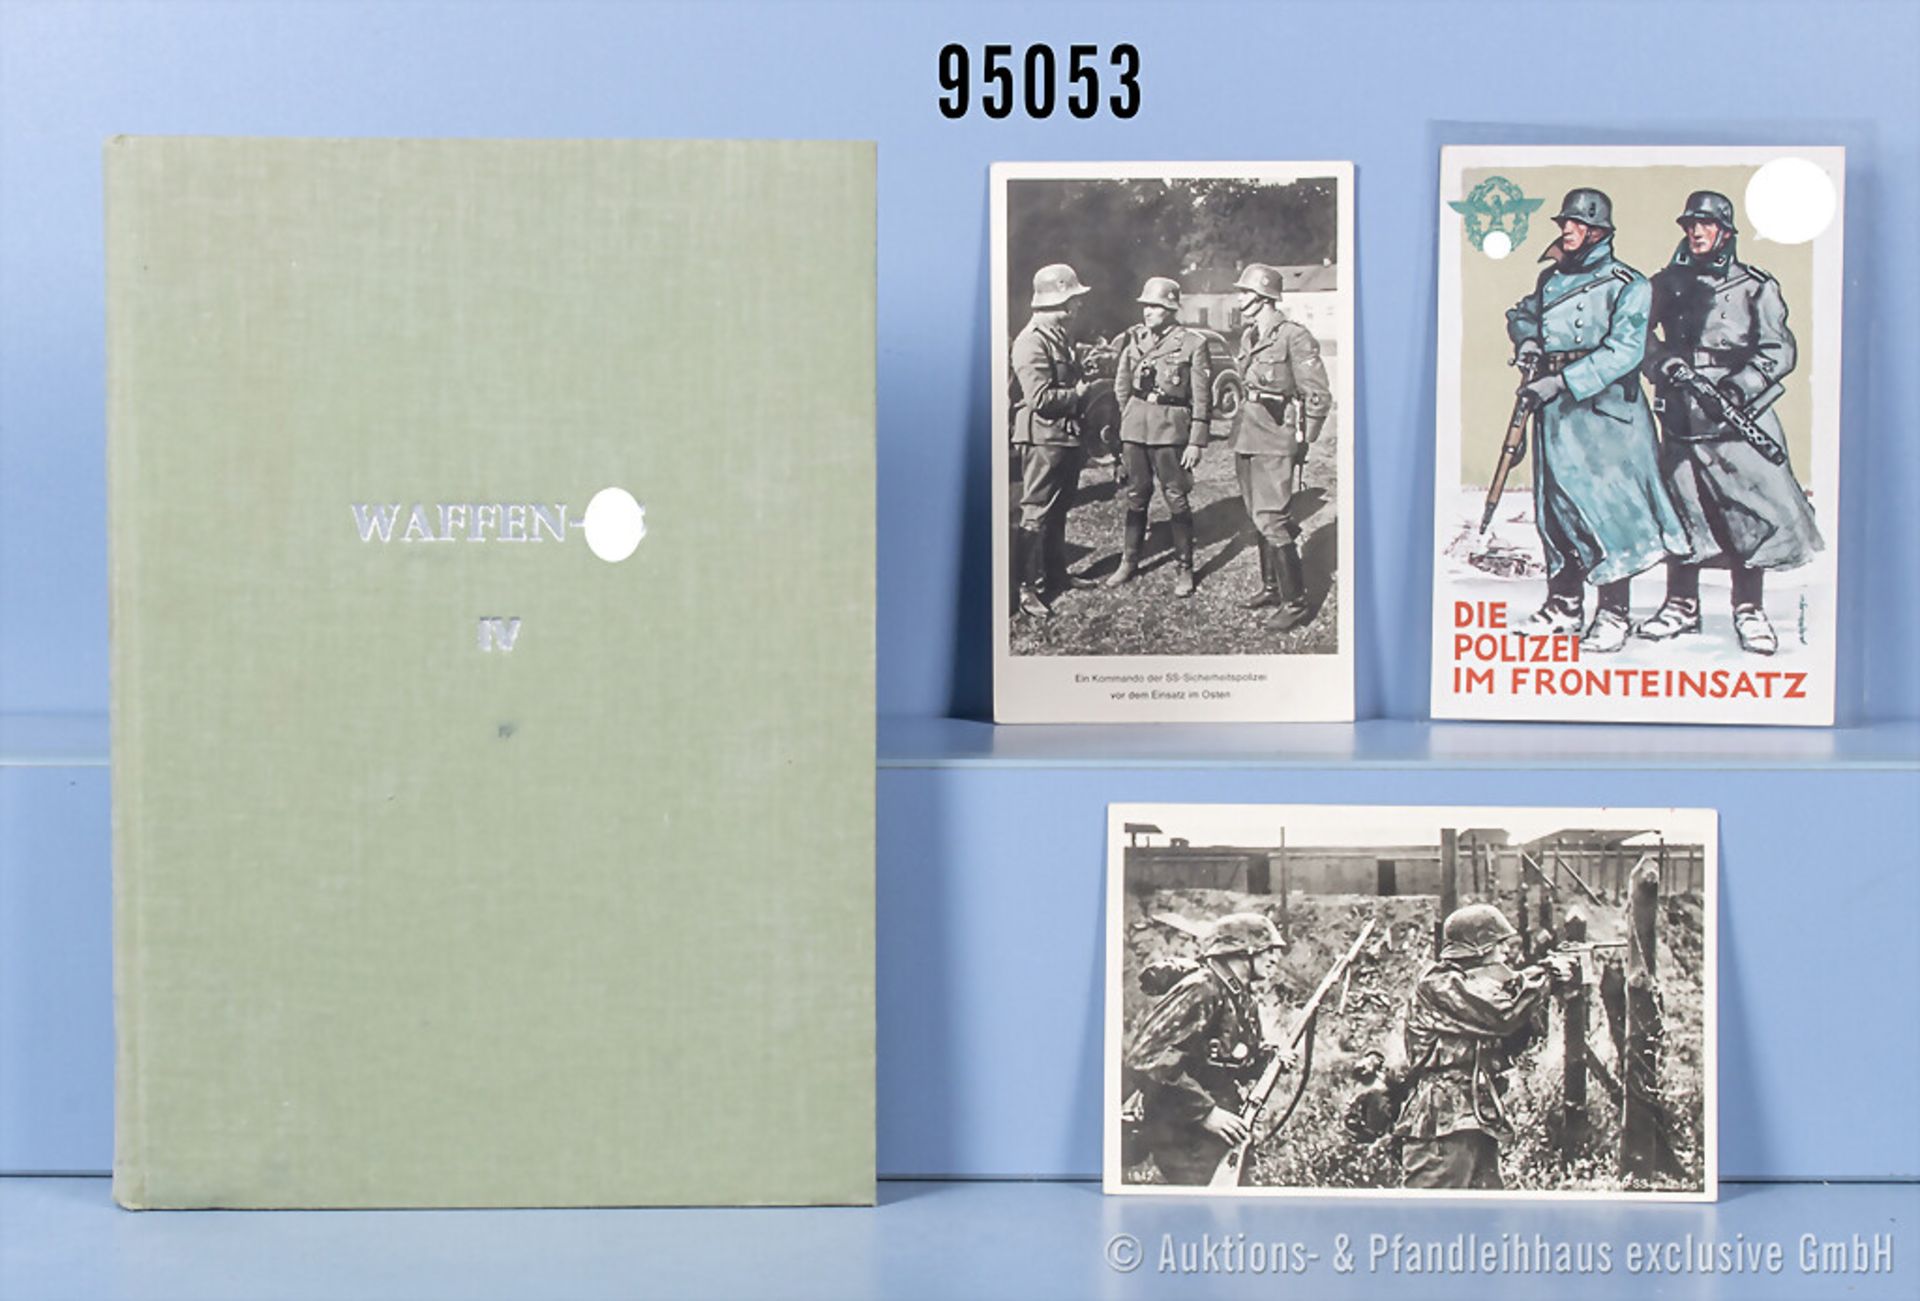 Konv. 3 Propaganda Postkarten der Waffen-SS, sowie Buch "Waffen-SS im Bild", 2. Auflage ...